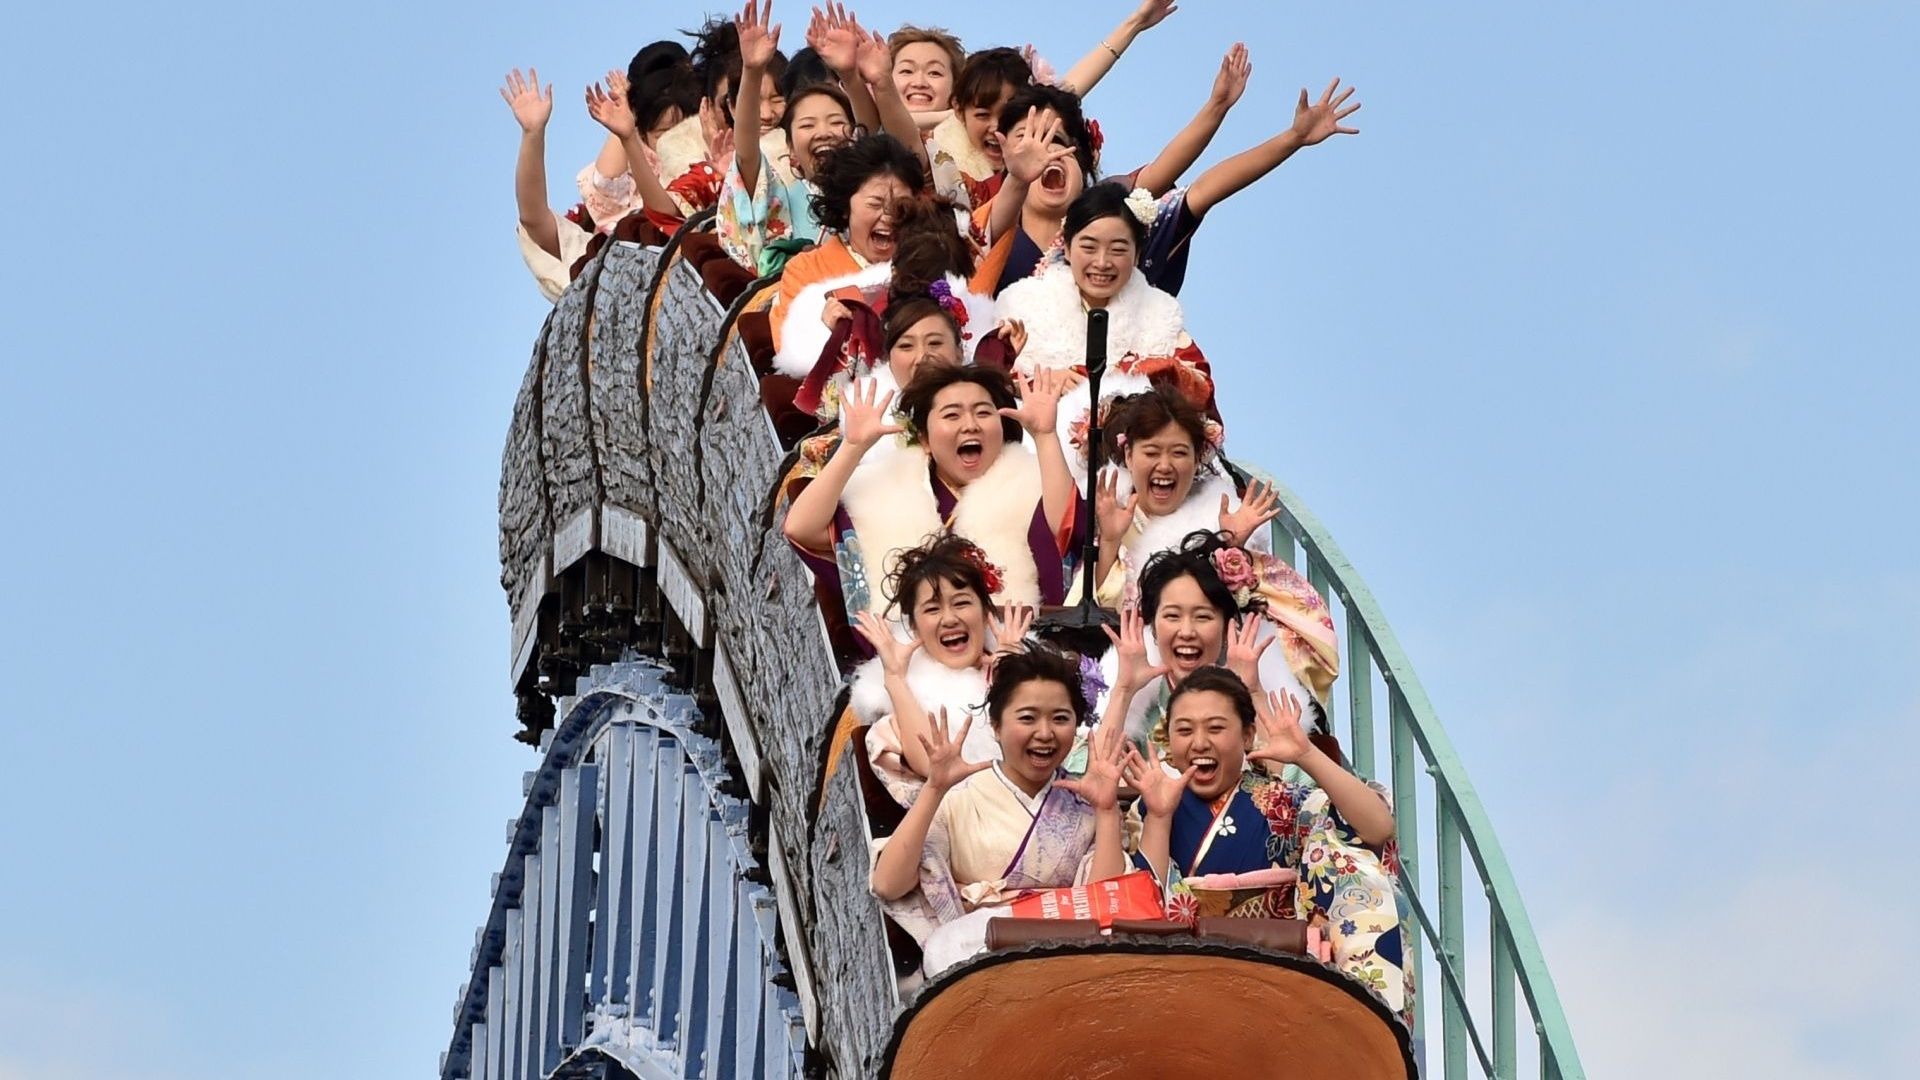 On ne pourra plus crier dans les montagnes russes au Japon.